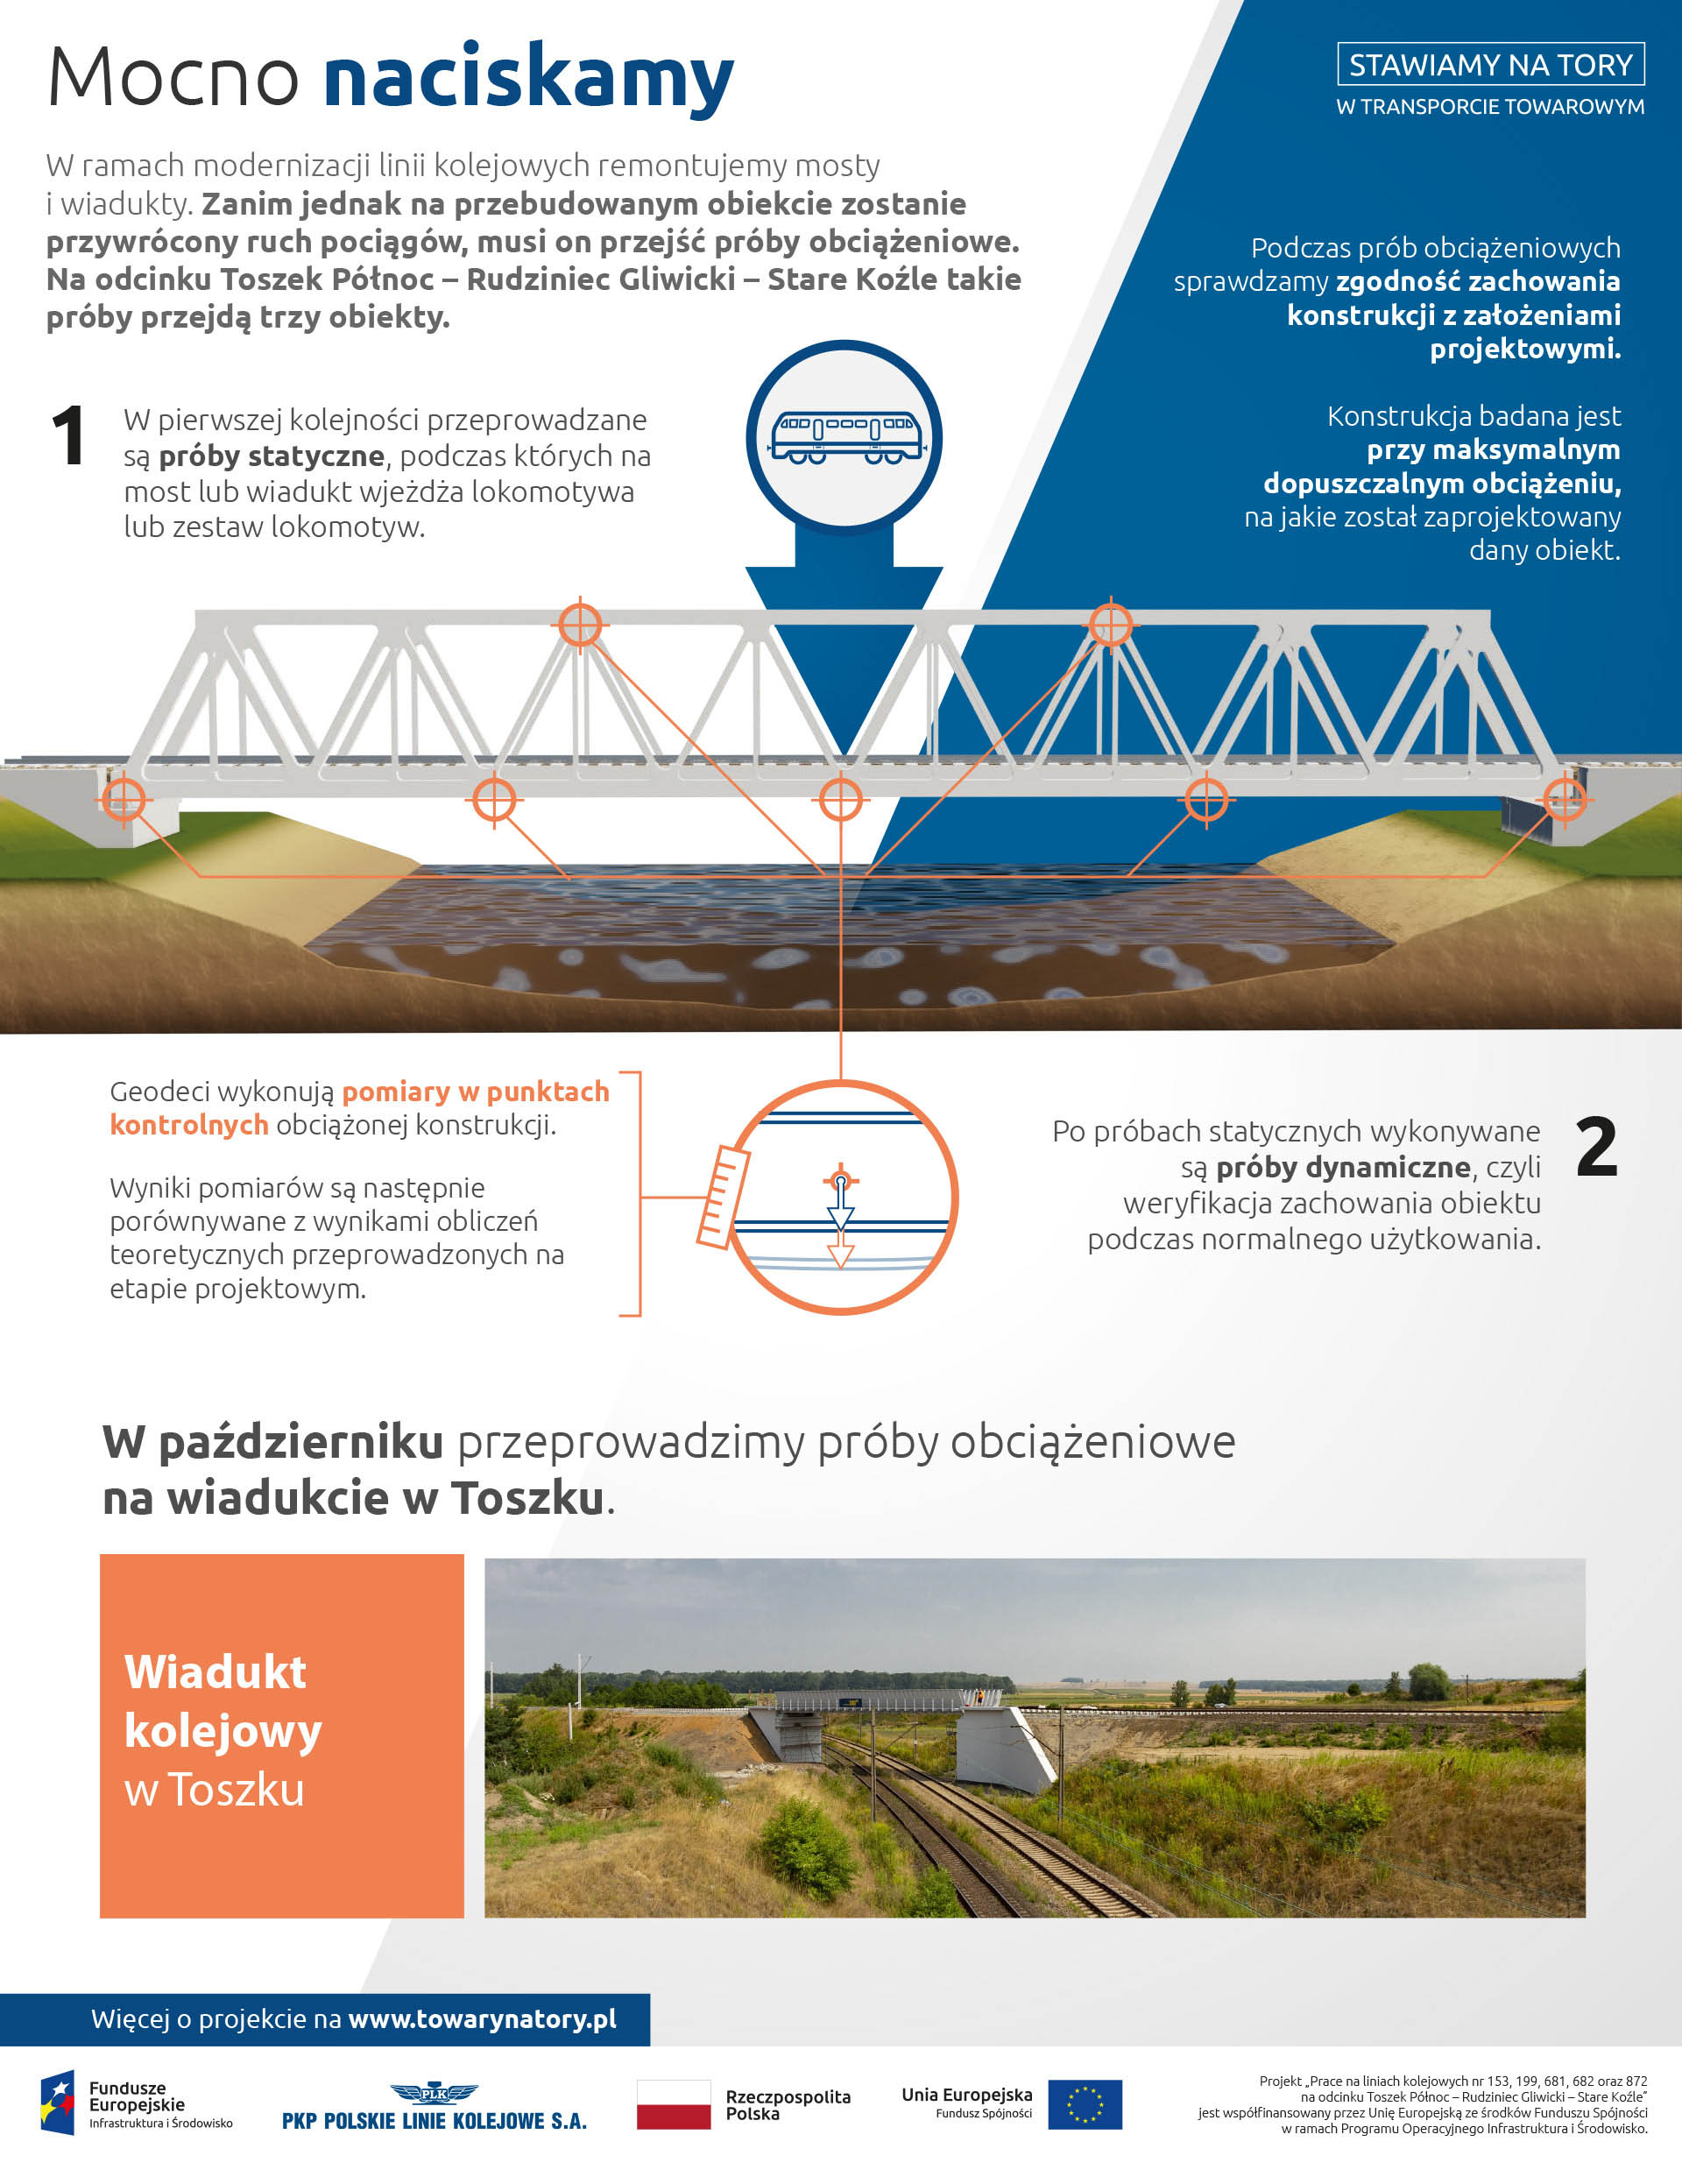 Infografika mówi o próbach obciążeniowych mostów. Pierw są wykonywane próby statyczne, potem dynamiczne. Sprawdzane jest zgodność zachowania konstrukcji z założeniami projektowymi.